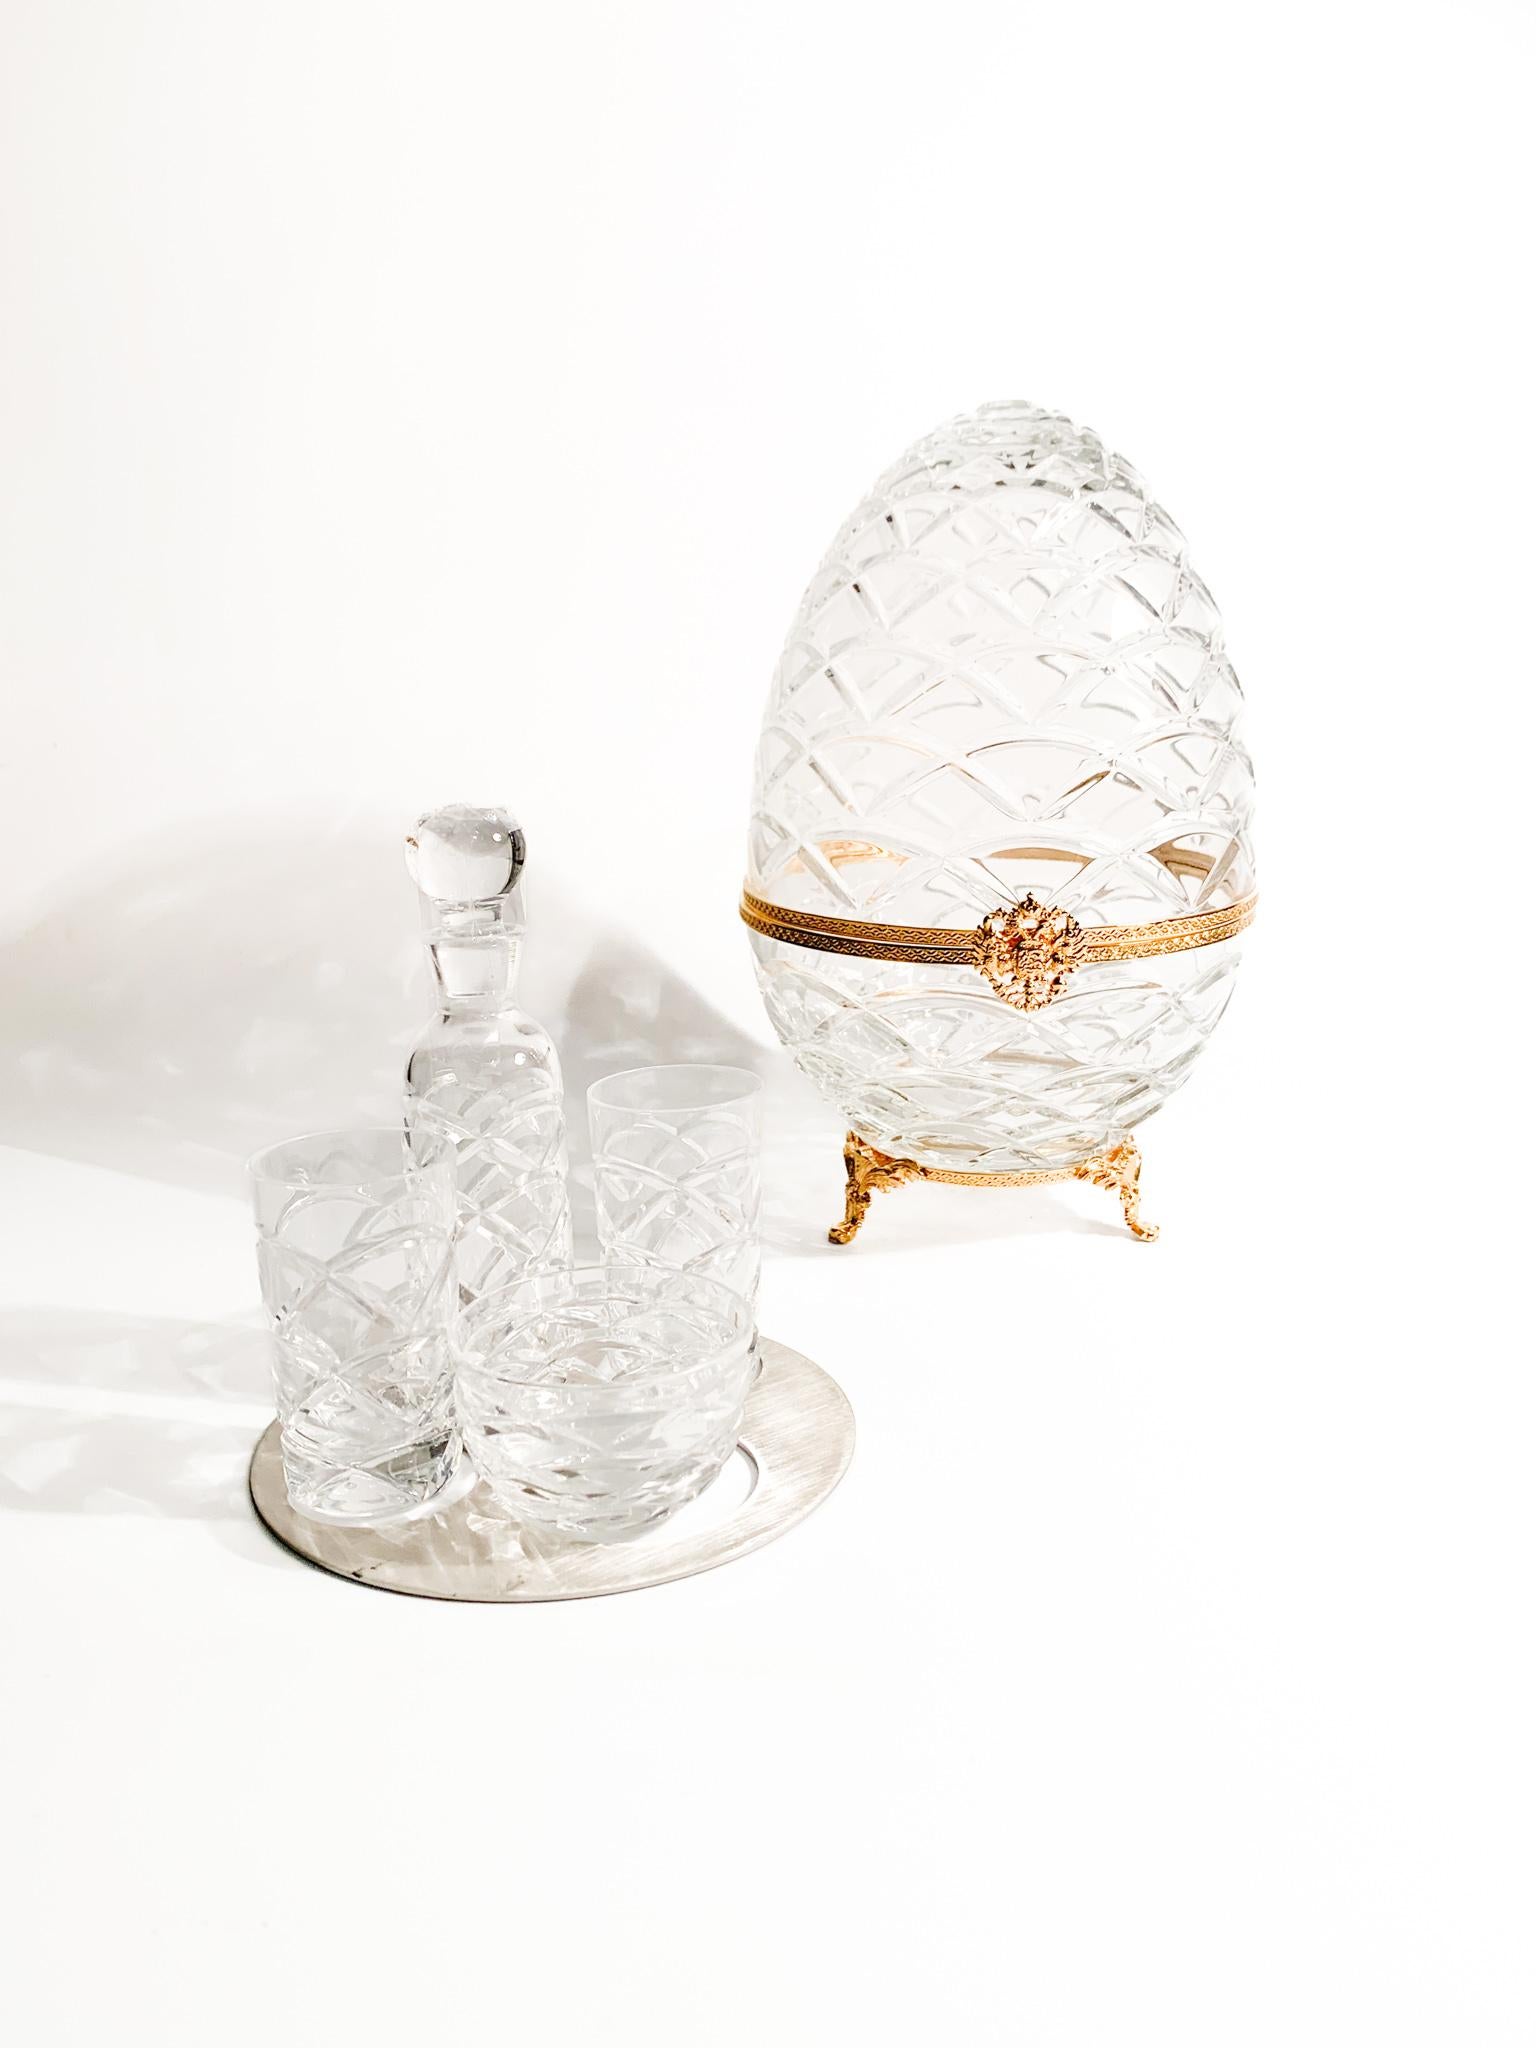 Imperialer Wodka und Kaviar-Set aus Fabergé-Kristall. Das Set enthält einen neuen Faberge, zwei Wodkagläser, eine Kaviarschale und eine Flasche. Sie enthält eine Schachtel.

Ei - Ø 15 cm h 25 cm 

Fabergé bezieht sich auf das berühmte Haus Fabergé,